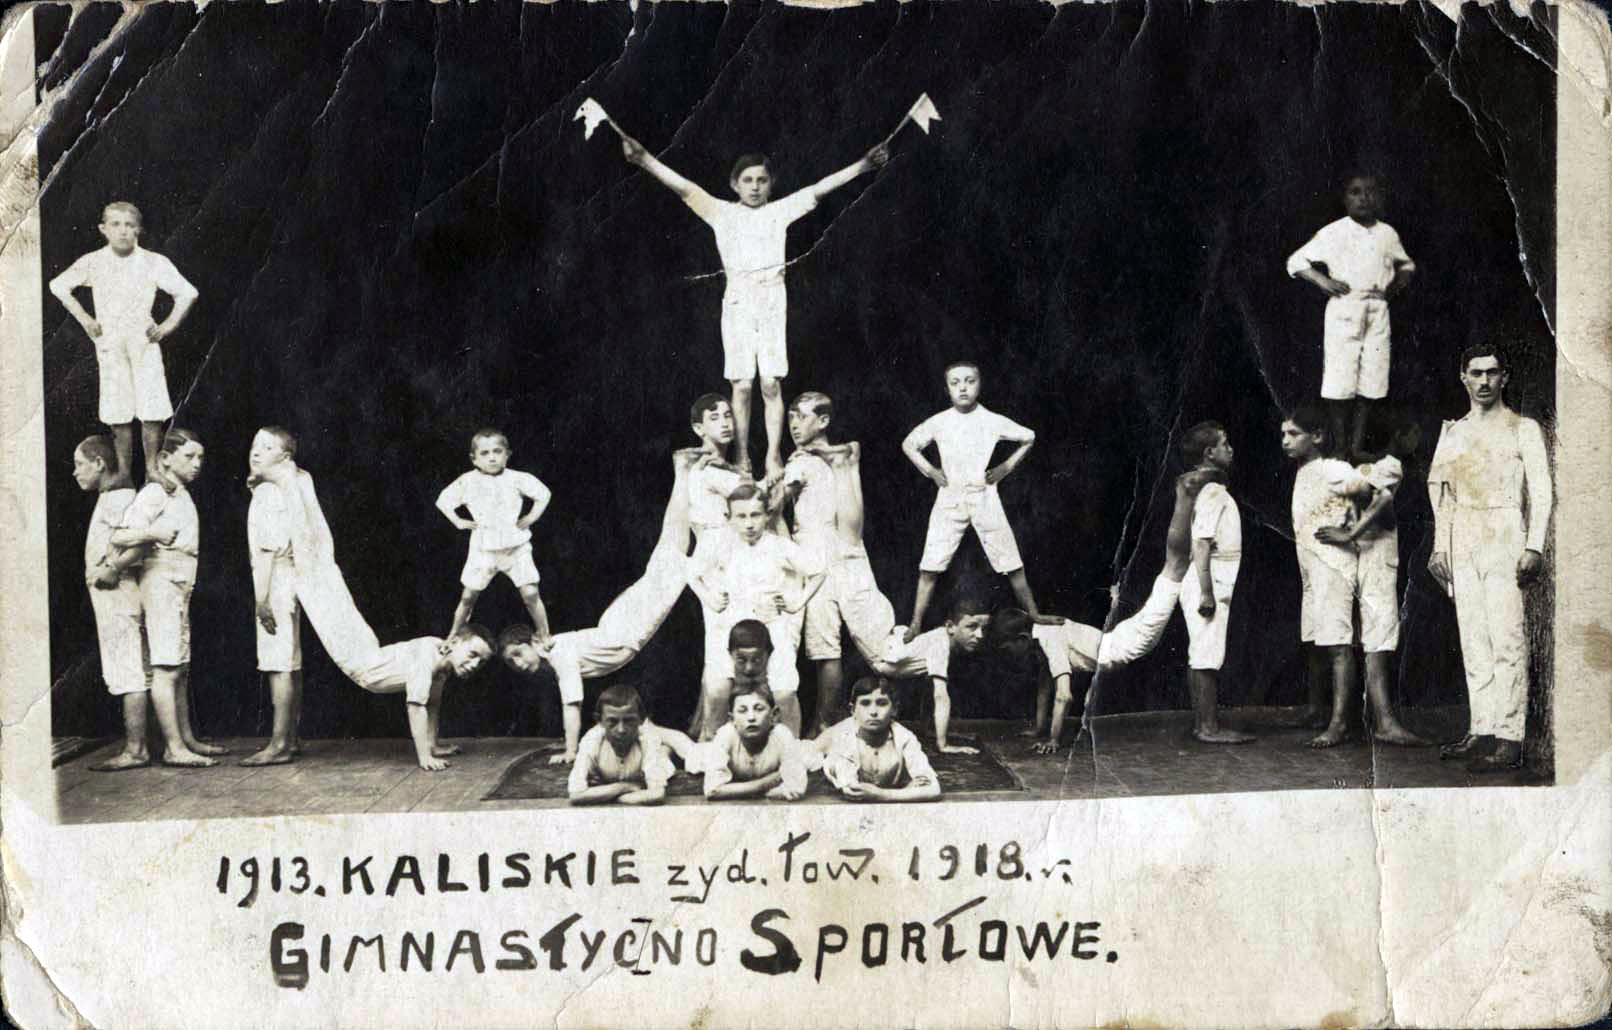 שיעור התעמלות במועדון הספורט יהודי בקאליש שבפולין, 1918